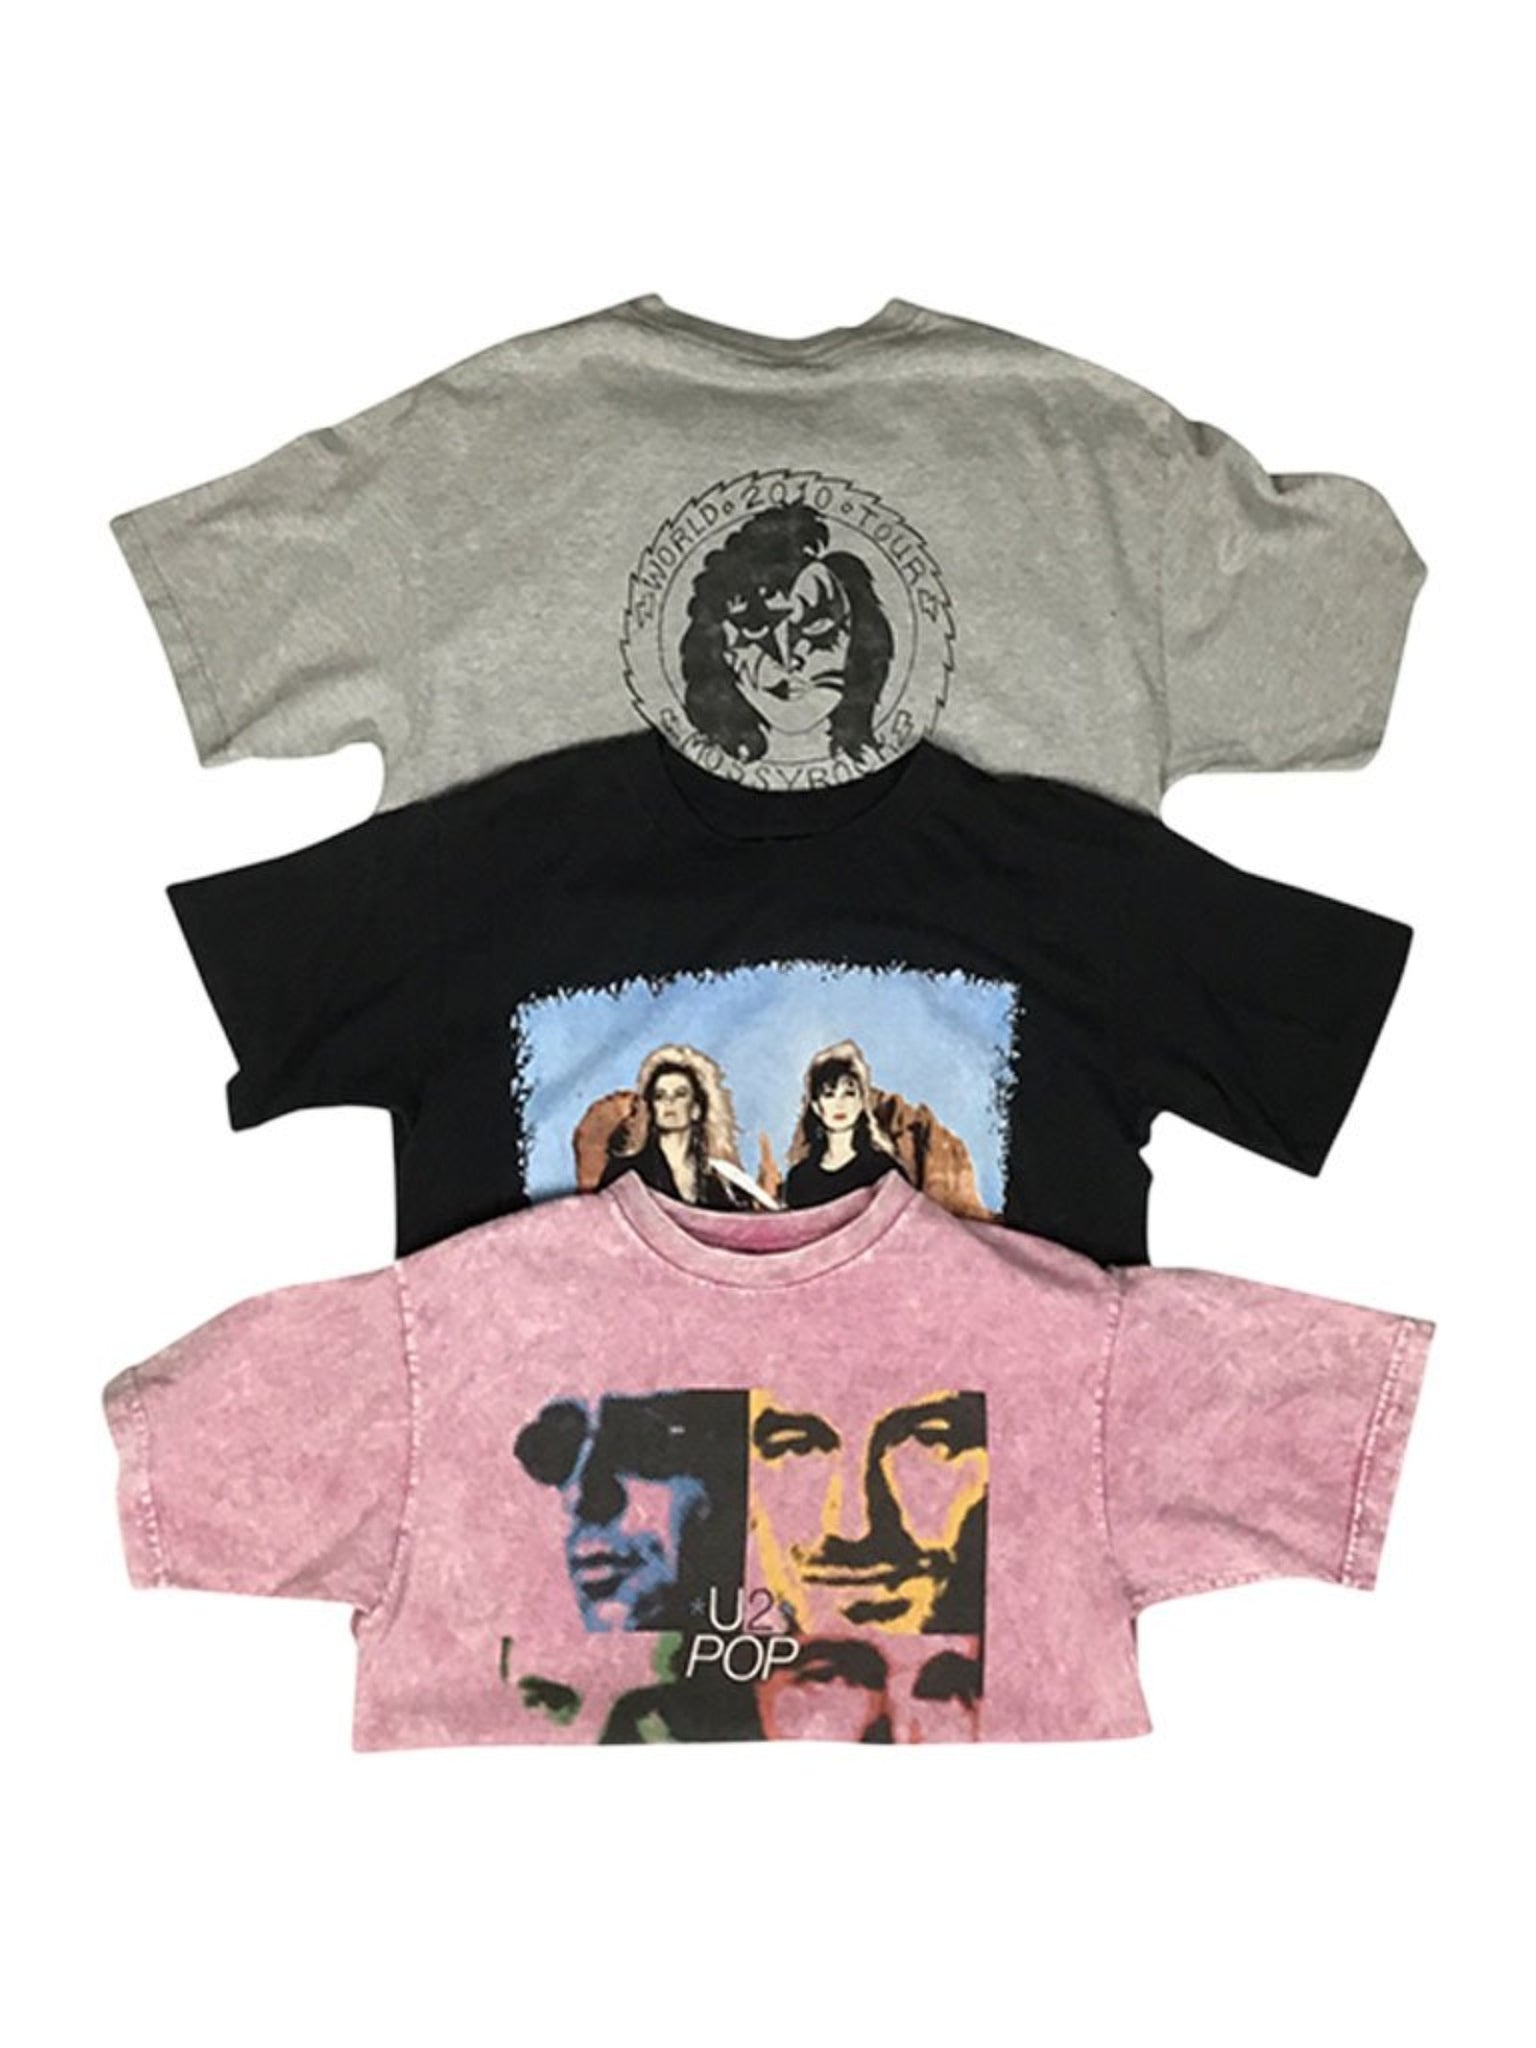 MWT Wholesale. Select Vintage T - Shirt Bundle - 25 pieces